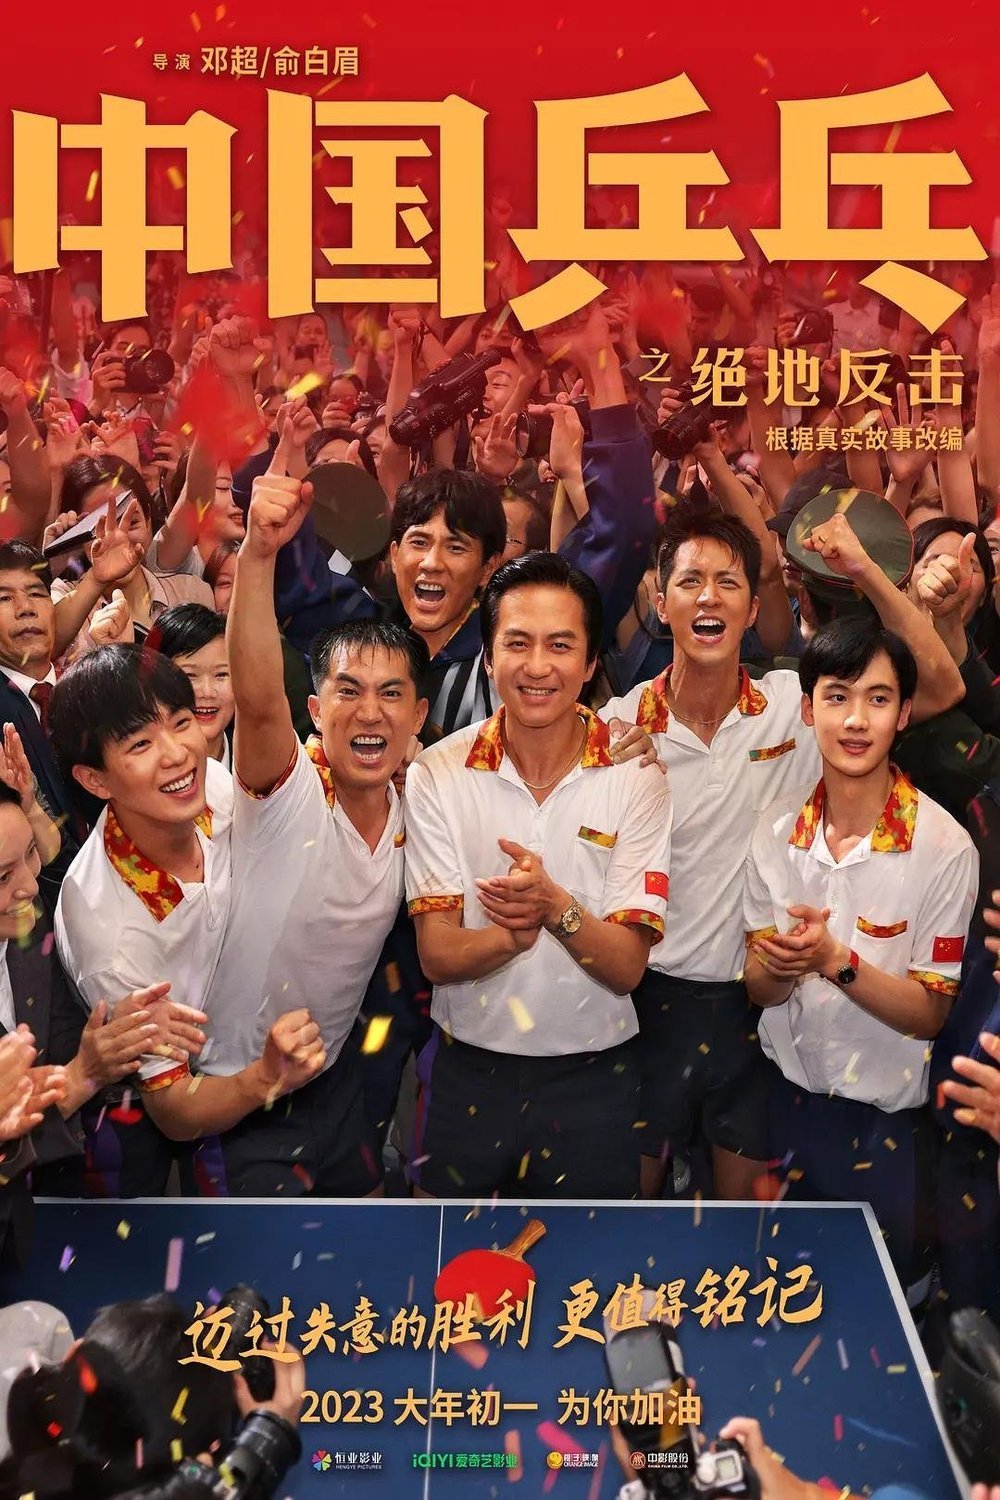 Phim mới của Đặng Siêu: Bóng bàn Trung Quốc: Cuộc phản công – Ping-Pong of China (2023)